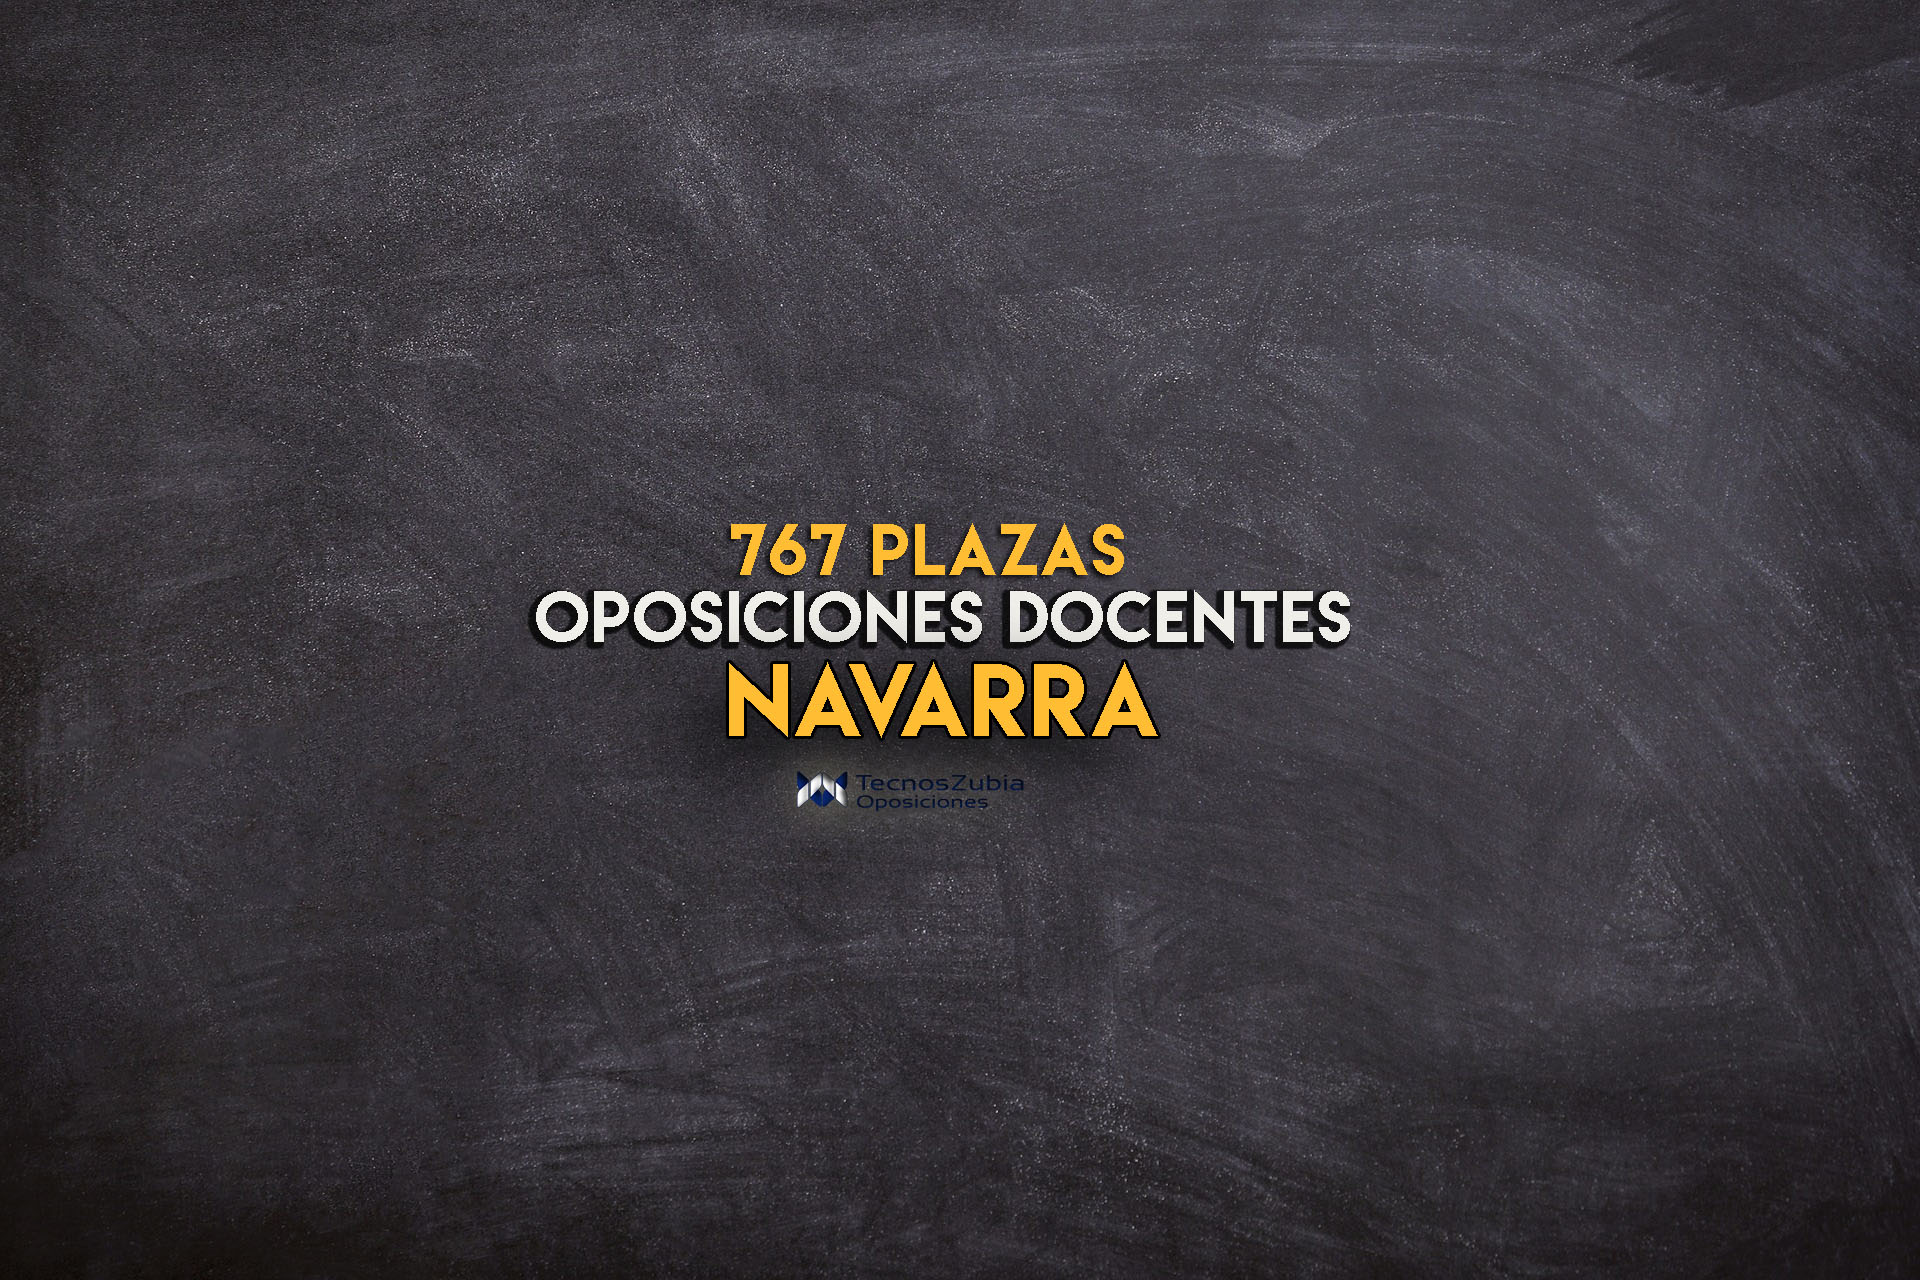 Navarra. Oposiciones docentes. 767 plazas